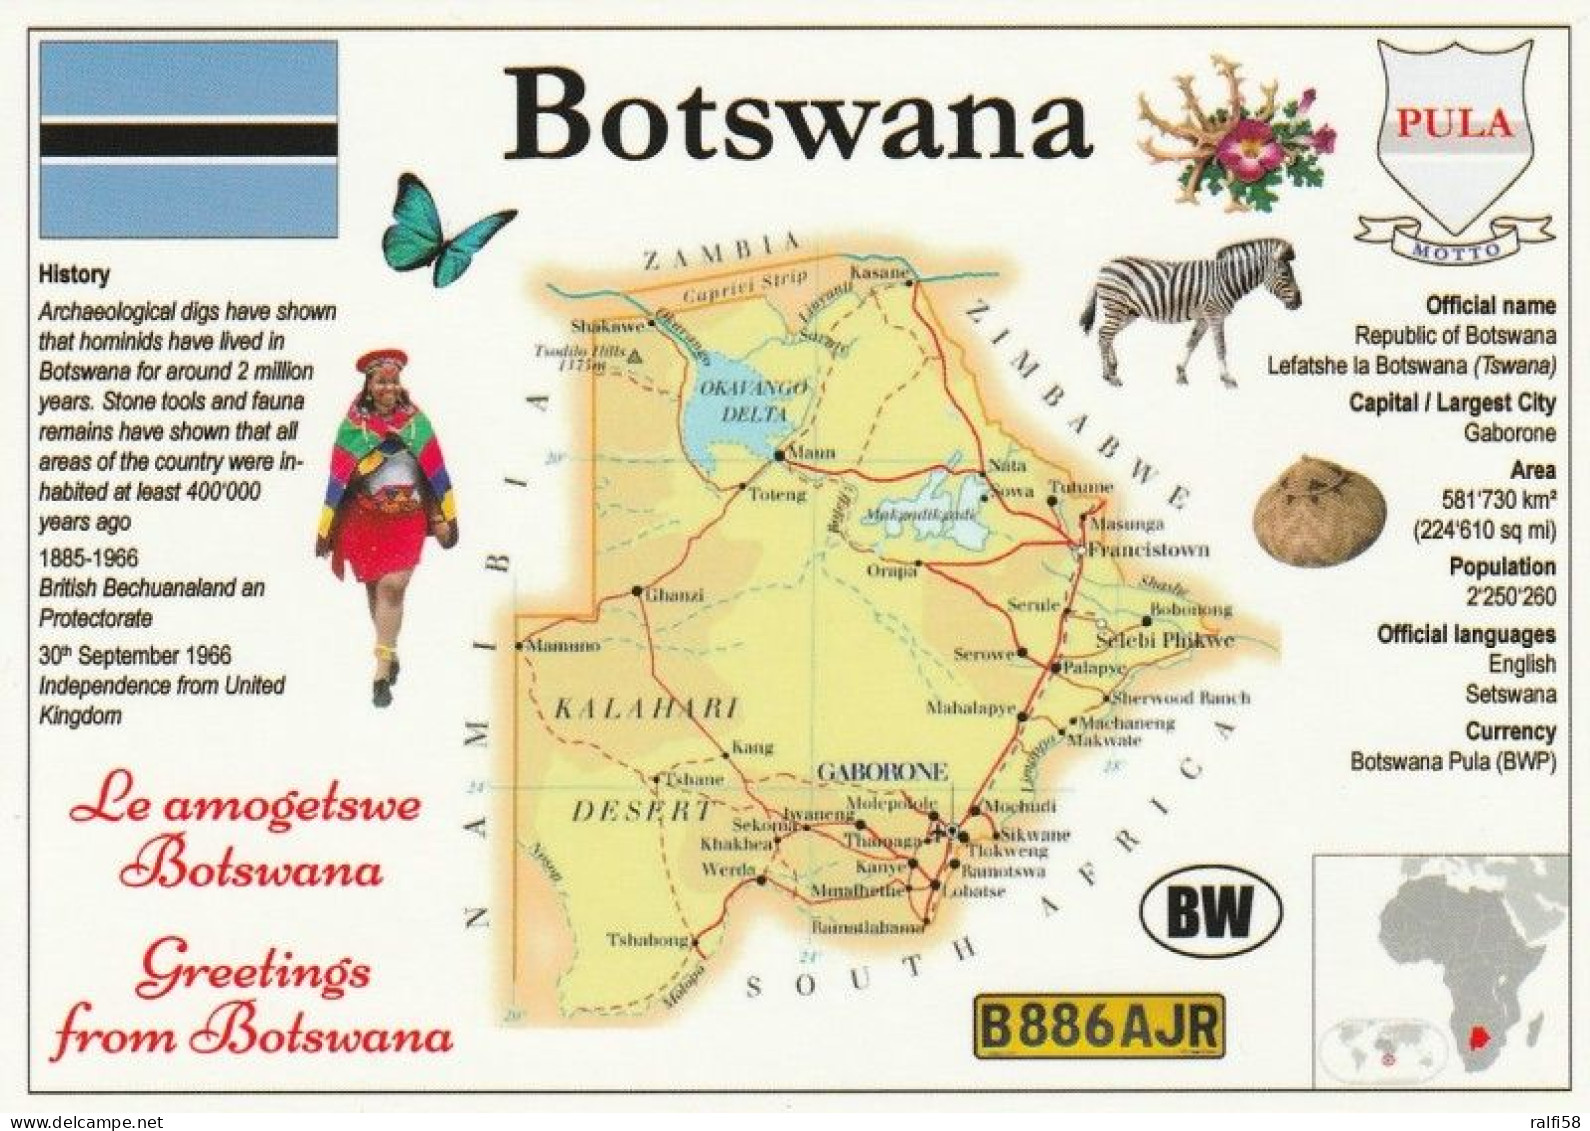 1 Map Of Botswana * 1 Ansichtskarte Mit Der Landkarte Von Botswana, Informationen Und Der Flagge Des Landes * - Maps